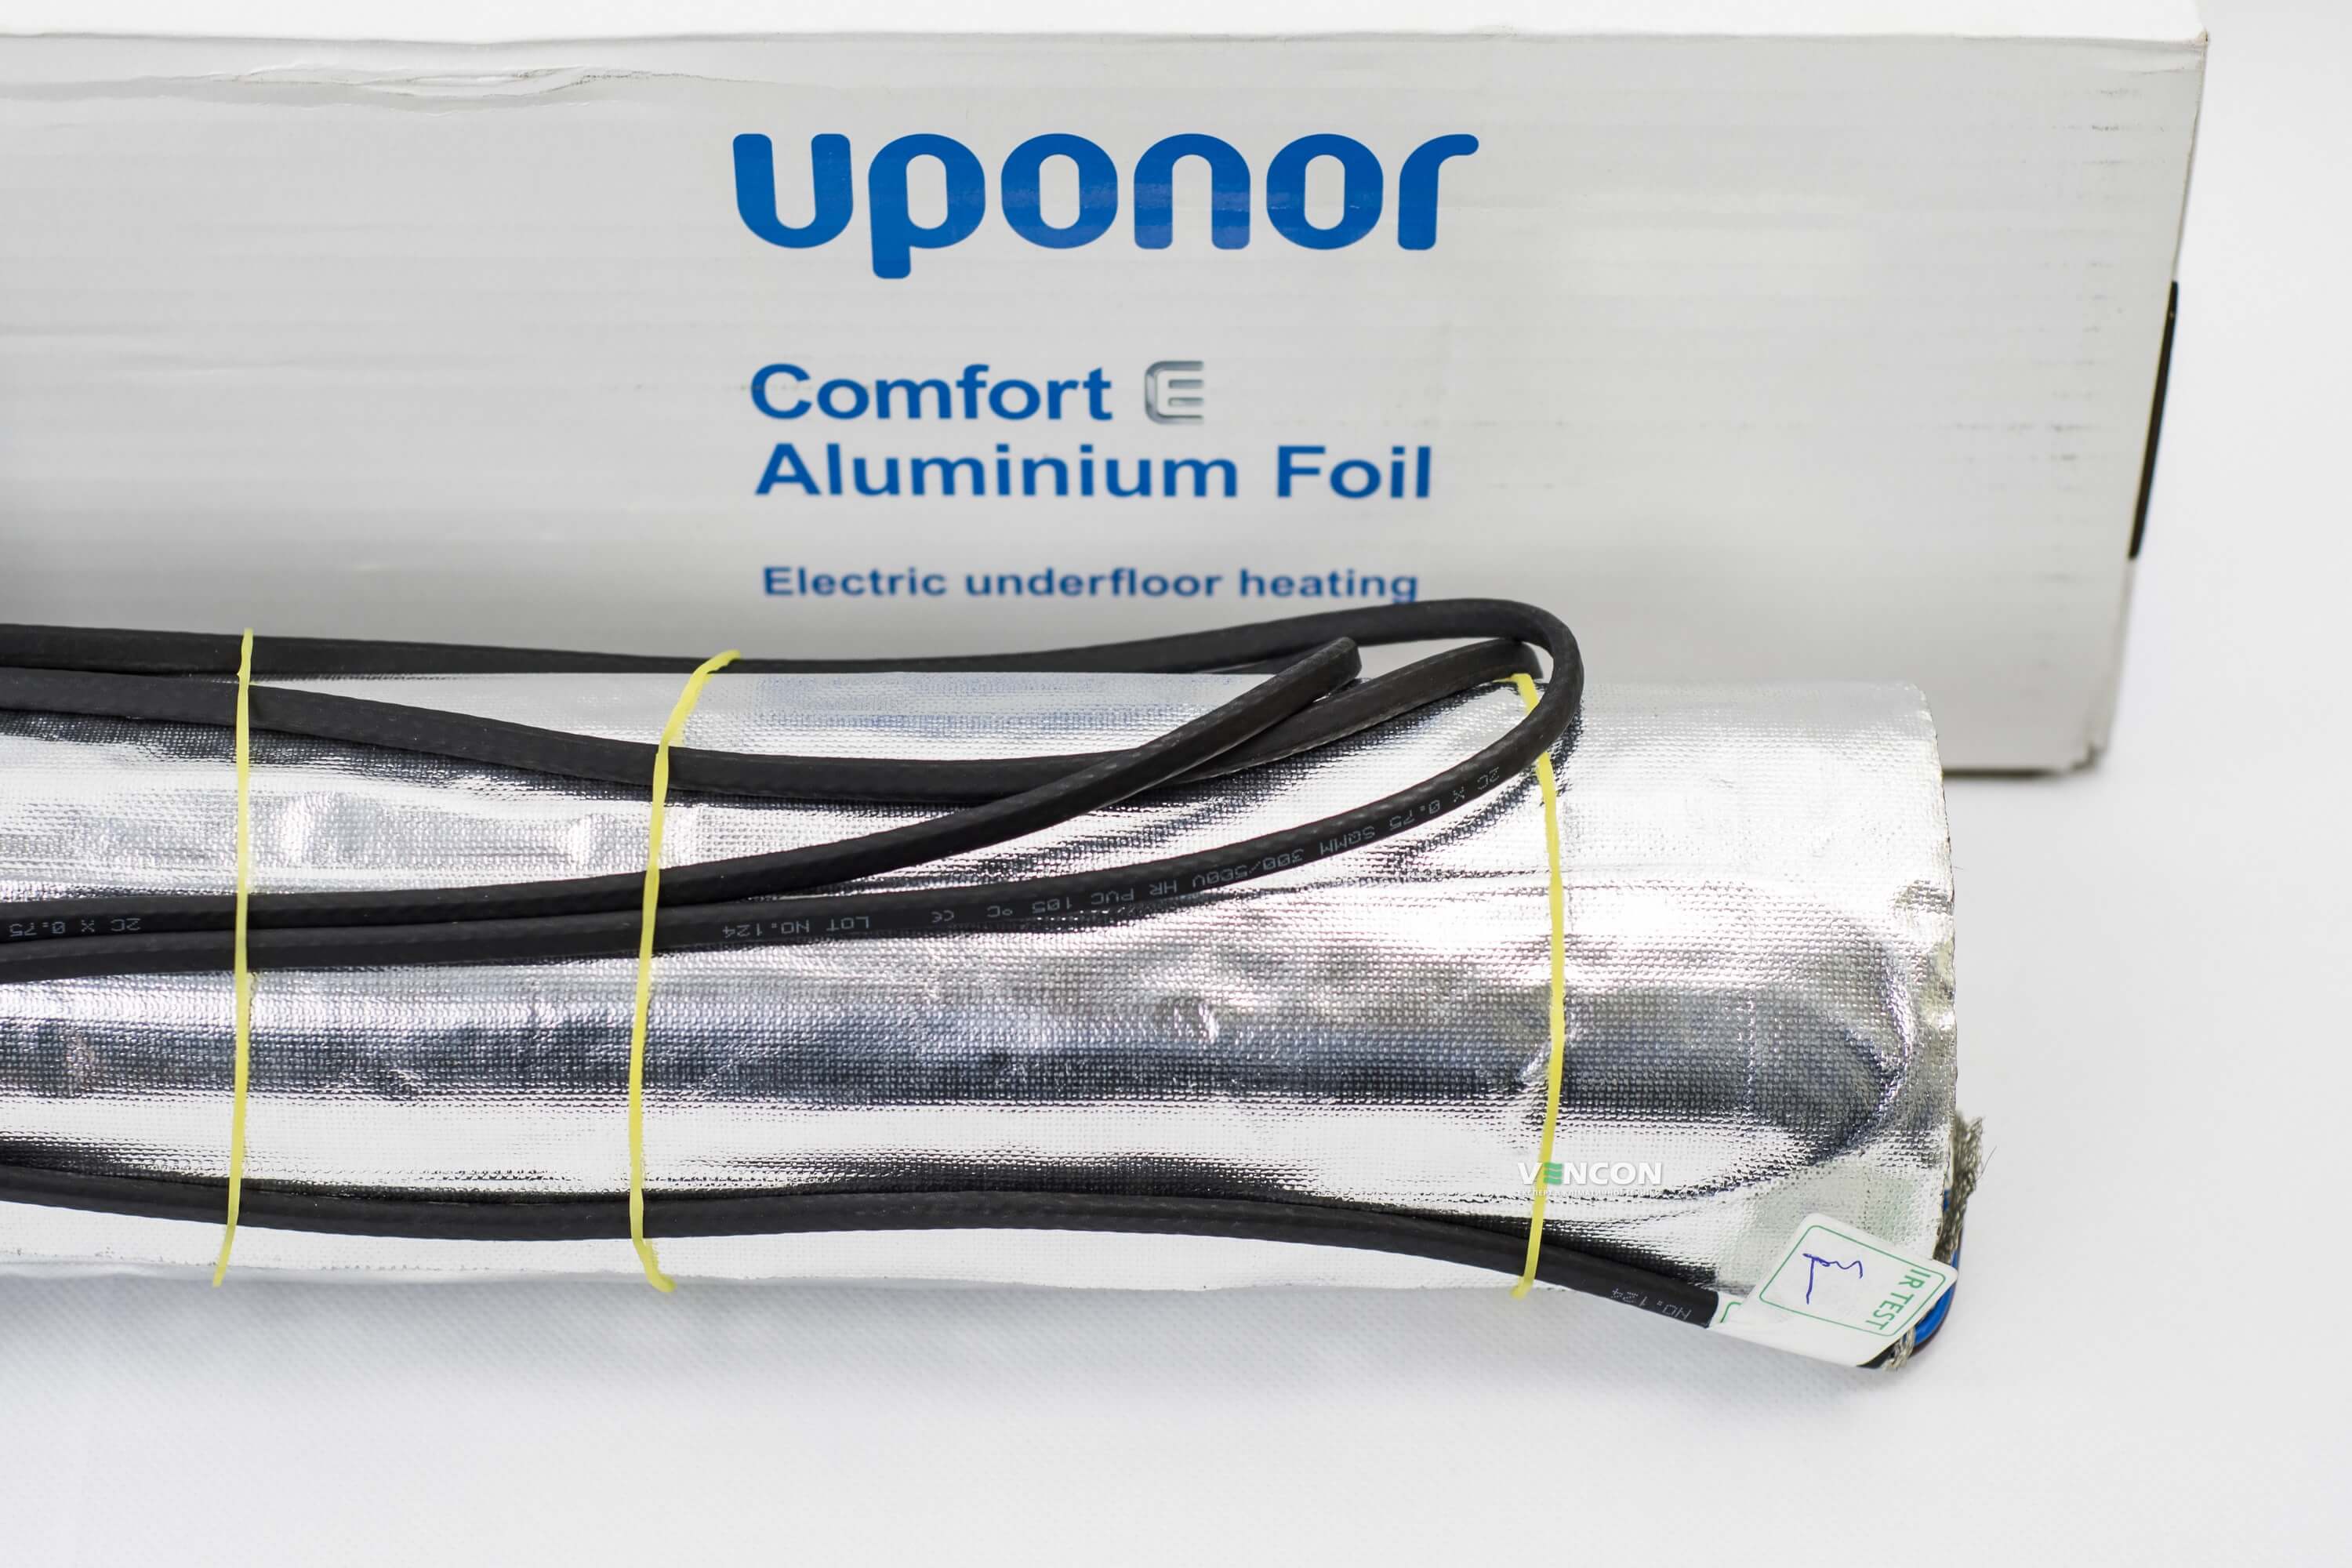 Электрический теплый пол Uponor Aluminium Foil 140-7 отзывы - изображения 5